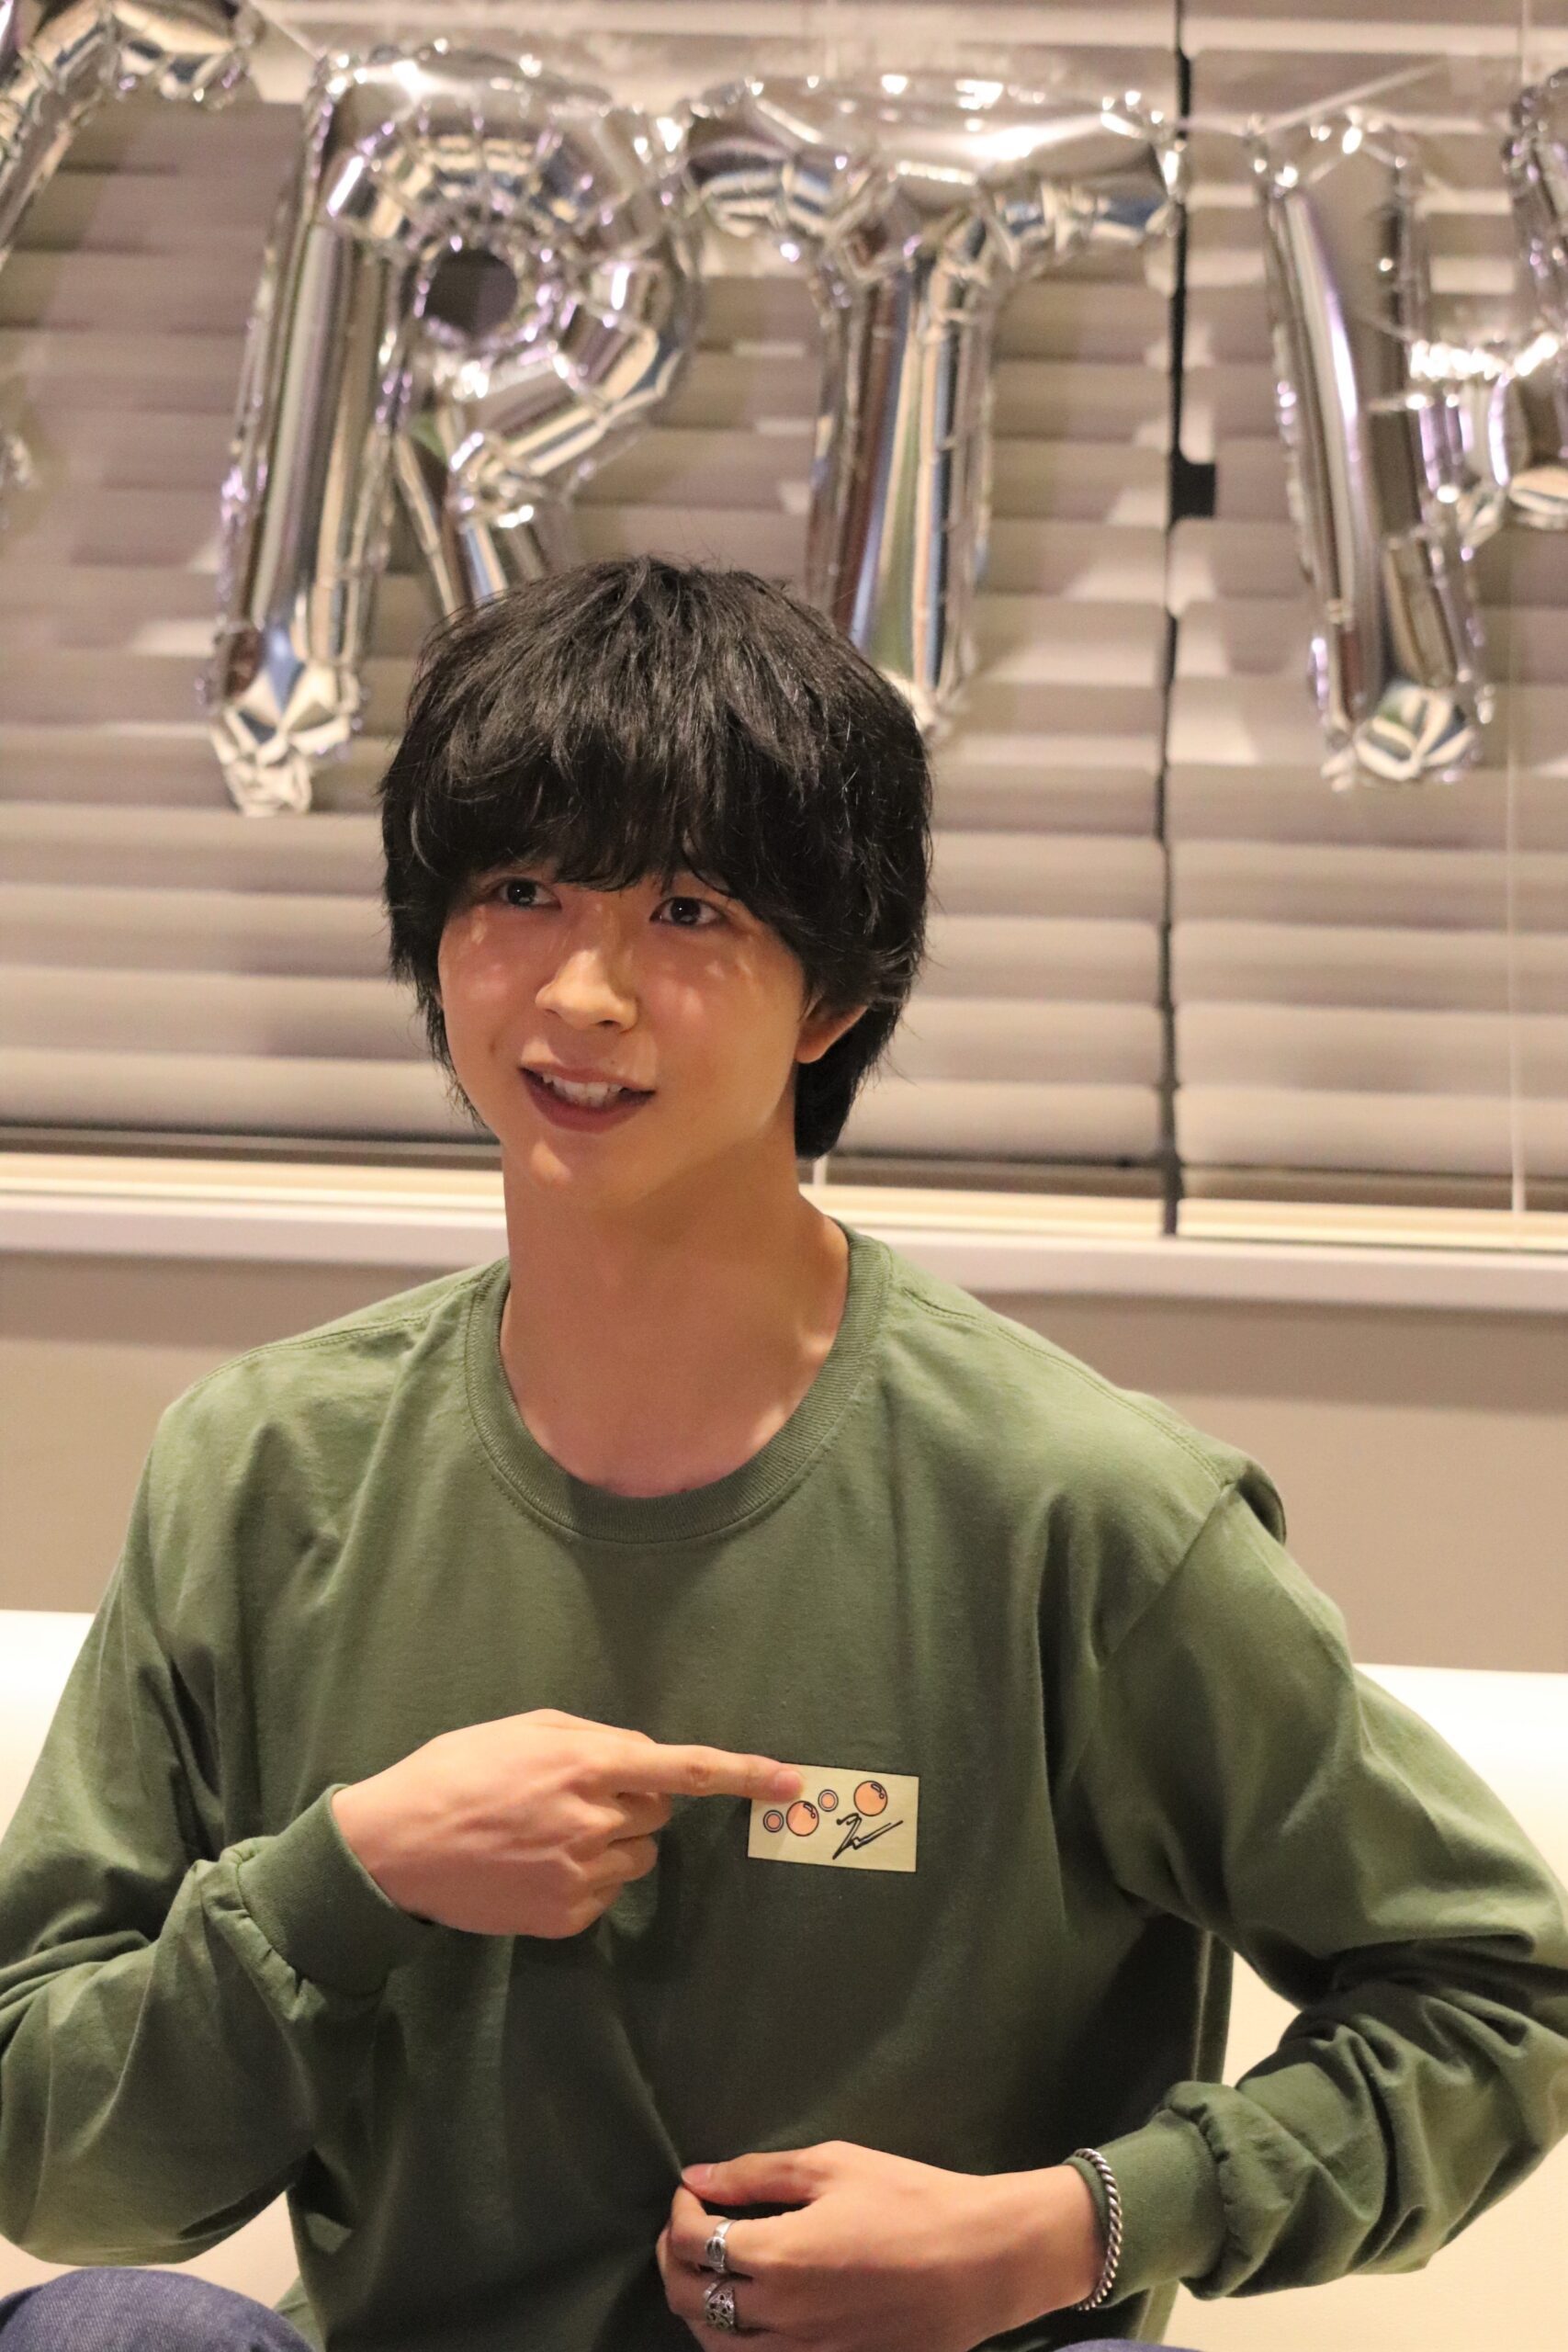 メンズノンノ専属モデル・俳優の鈴木仁が、自身の22歳の誕生日を迎え、バースデーオンラインイベント「Jin Suzuki 22nd Birthday Event」を開催した。サプライズゲストとして兵頭功海、松岡広大、渡邊圭祐が登場。